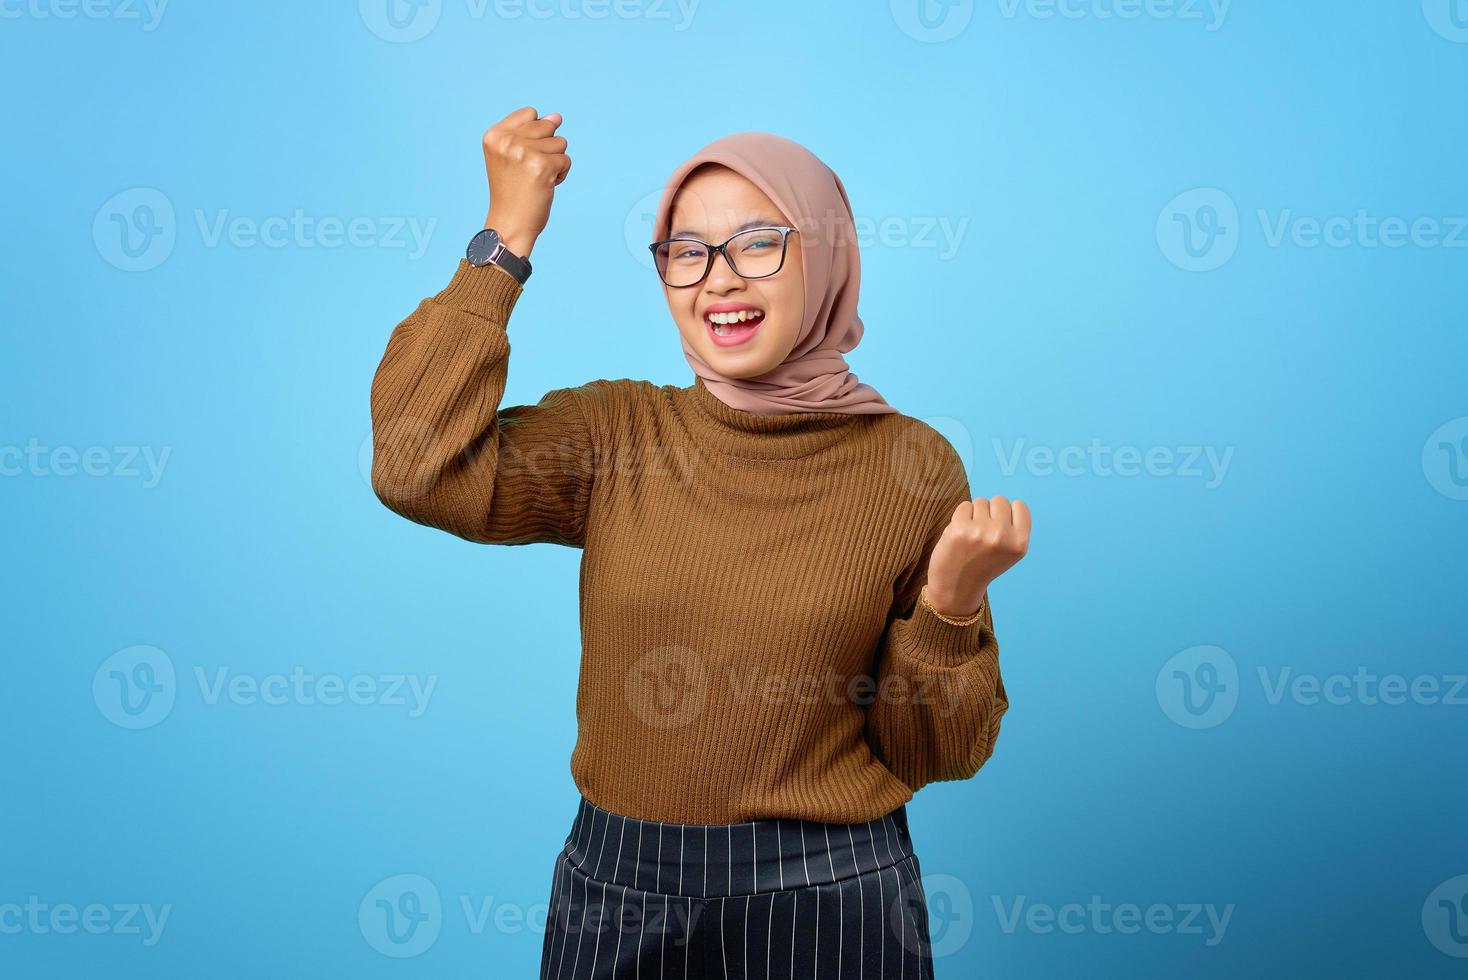 retrato de alegre linda mulher asiática celebrando a sorte em fundo azul foto